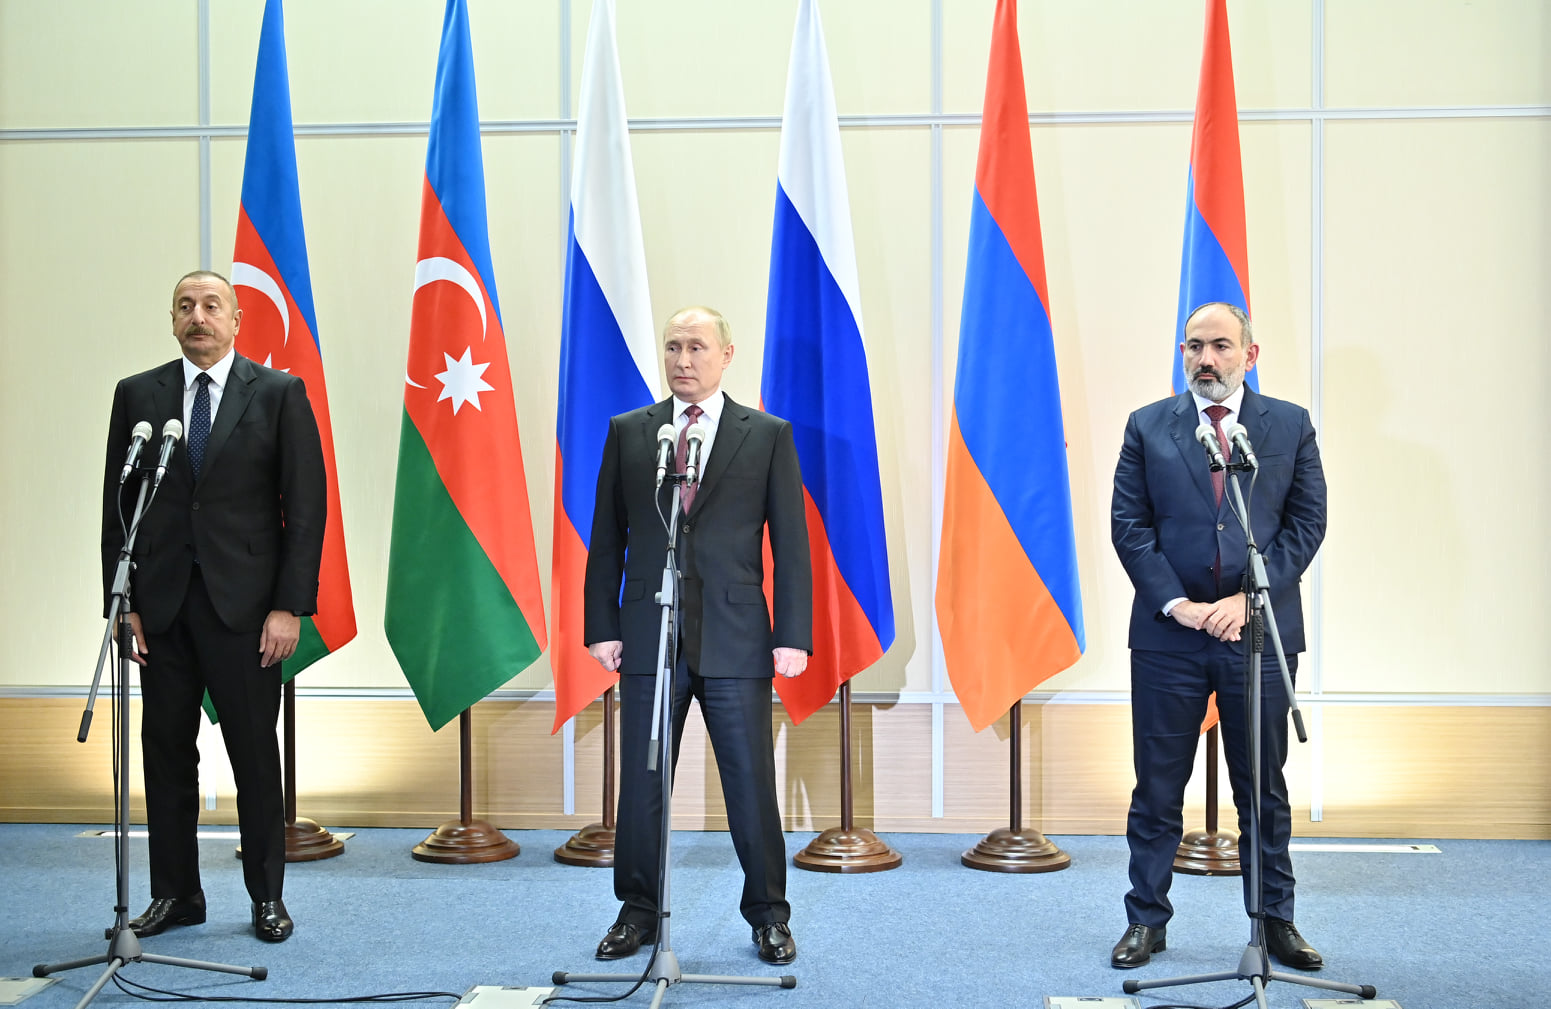 İlham Əliyev, Putin və Paşinyan mətbuata bəyanatla çıxış etdilər